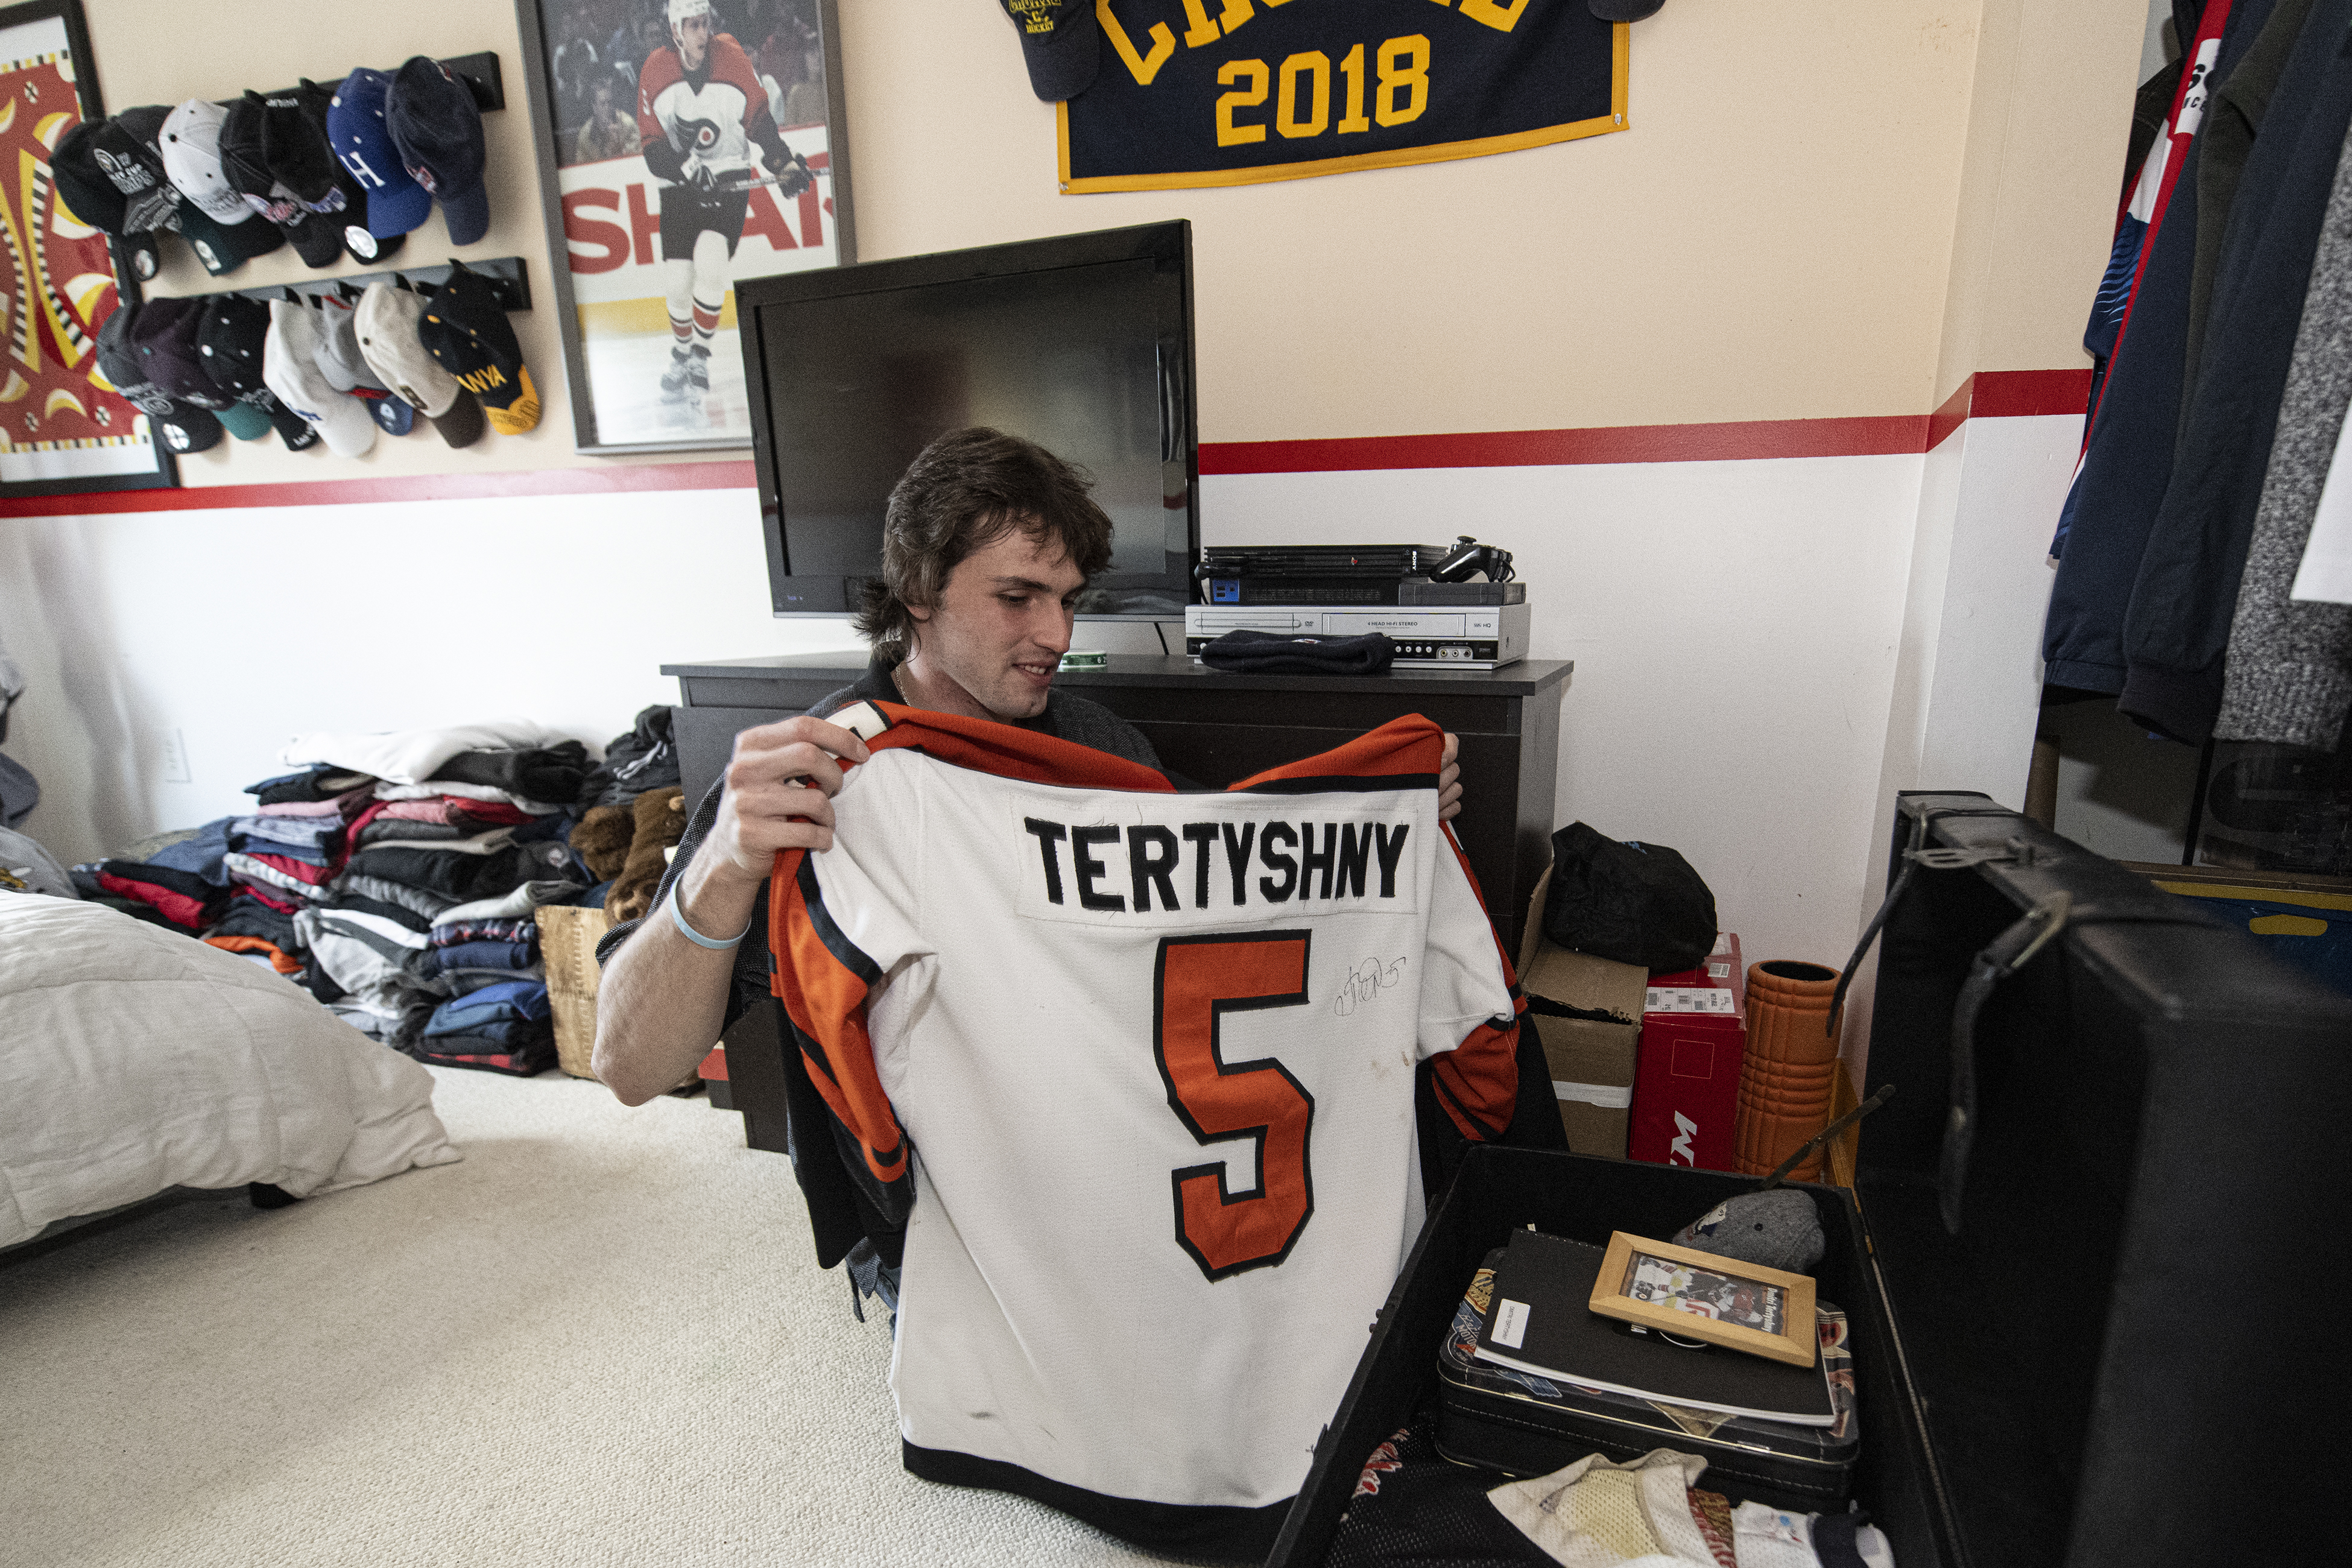 Late Flyers defenseman Dmitri Tertyshny lives on through his